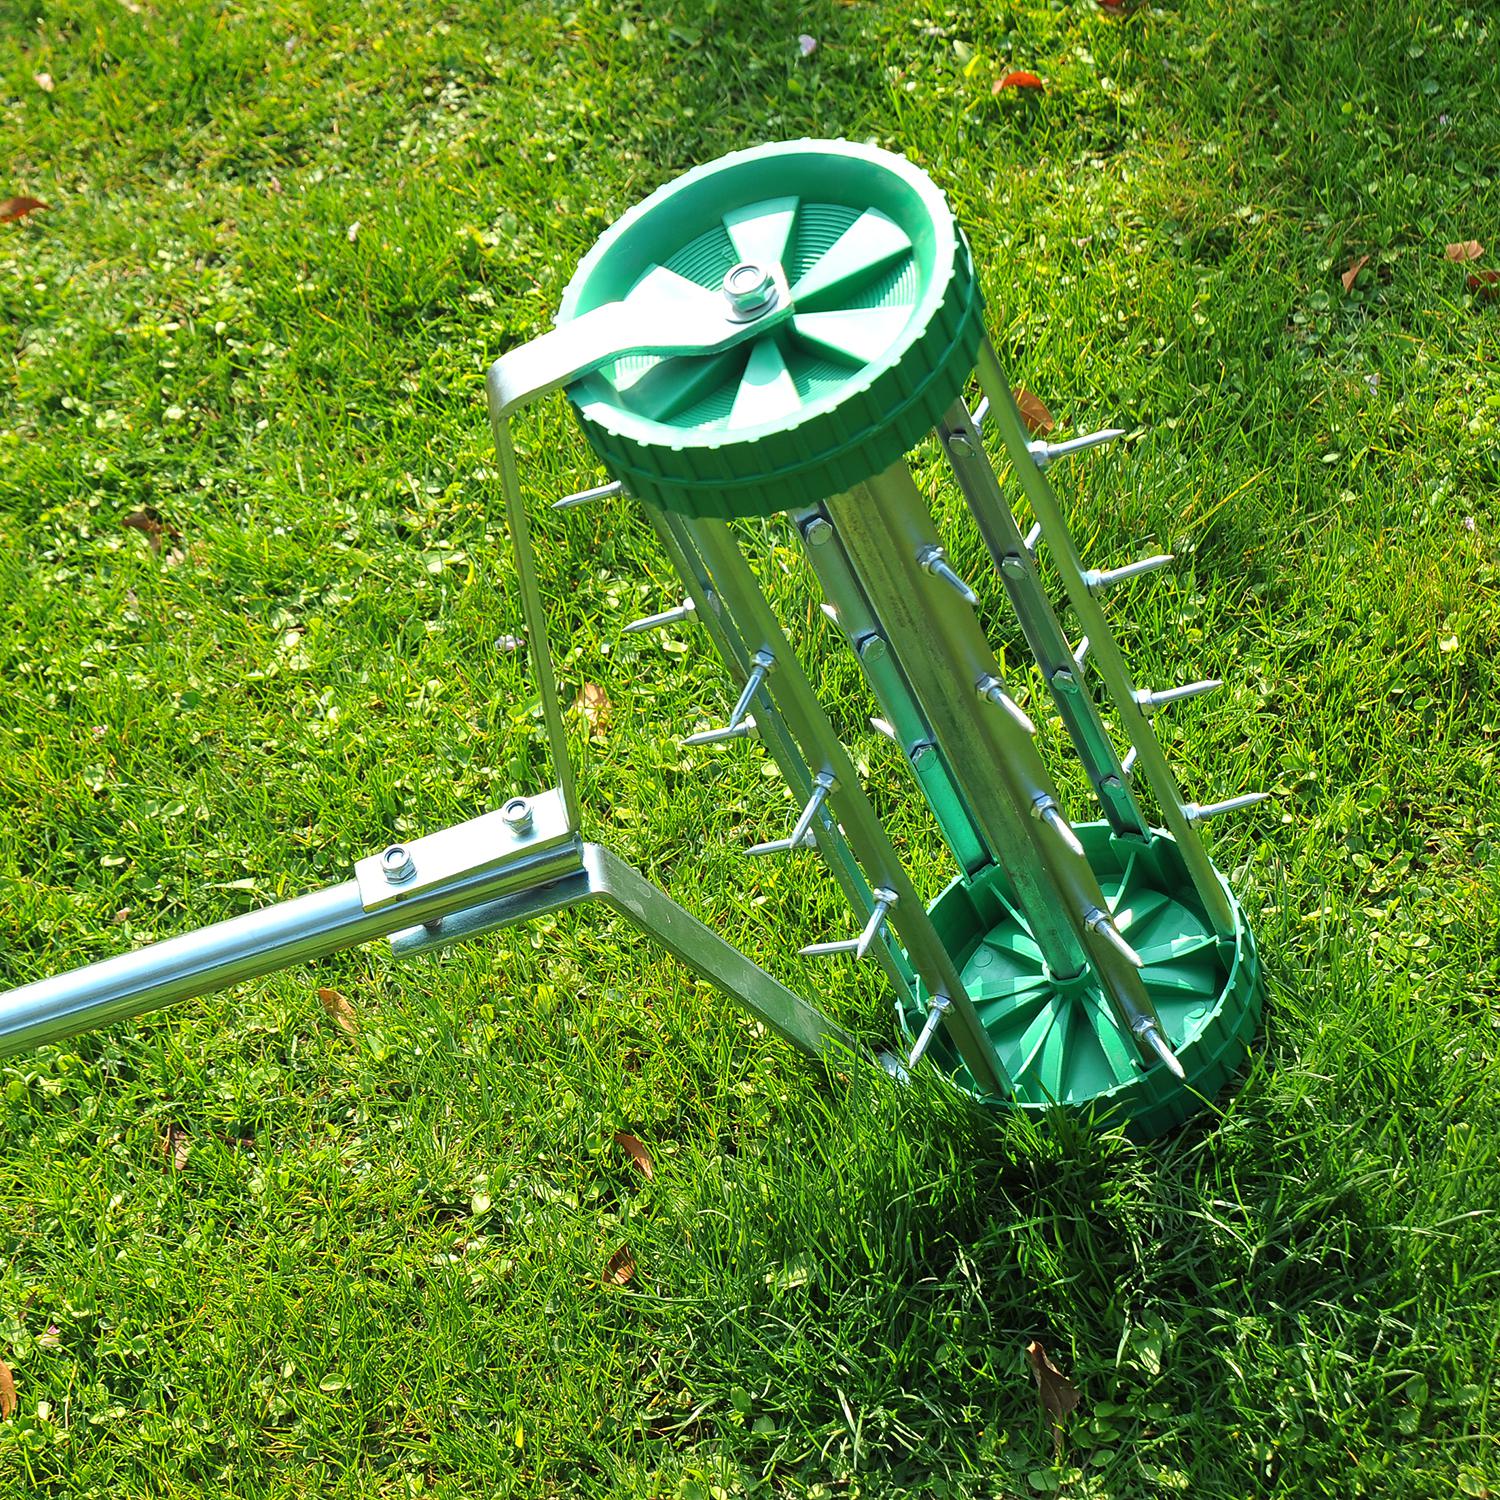 Rouleau aérateur pour pelouse avec manche télescopique 98L x 45l x 87H cm vert